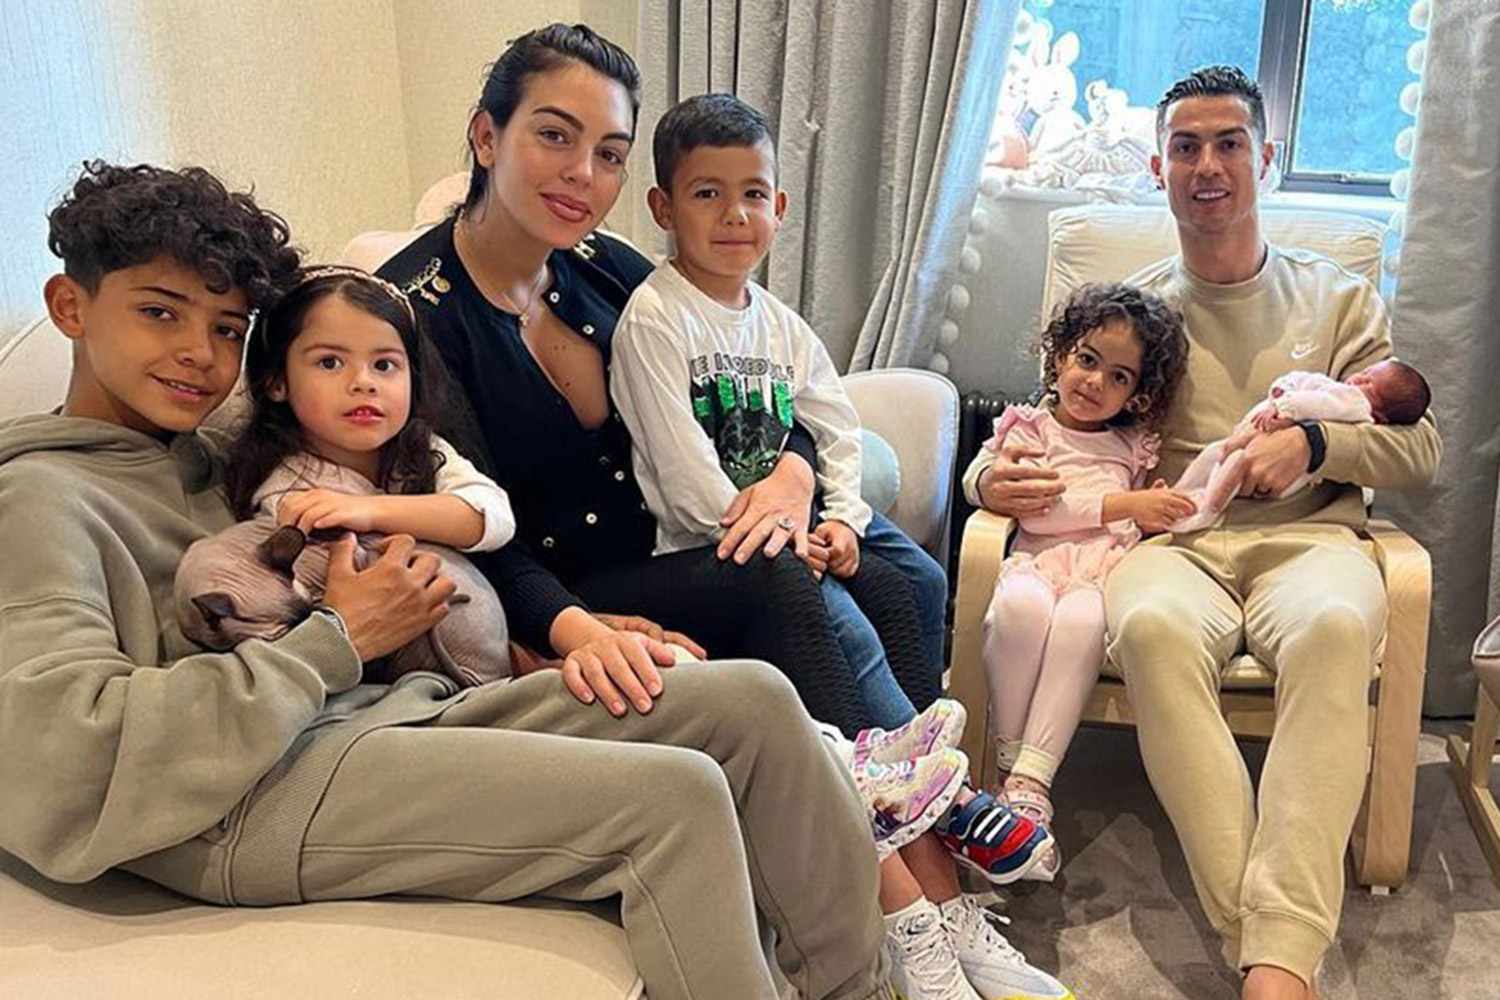 La famiglia di Cristiano Ronaldo